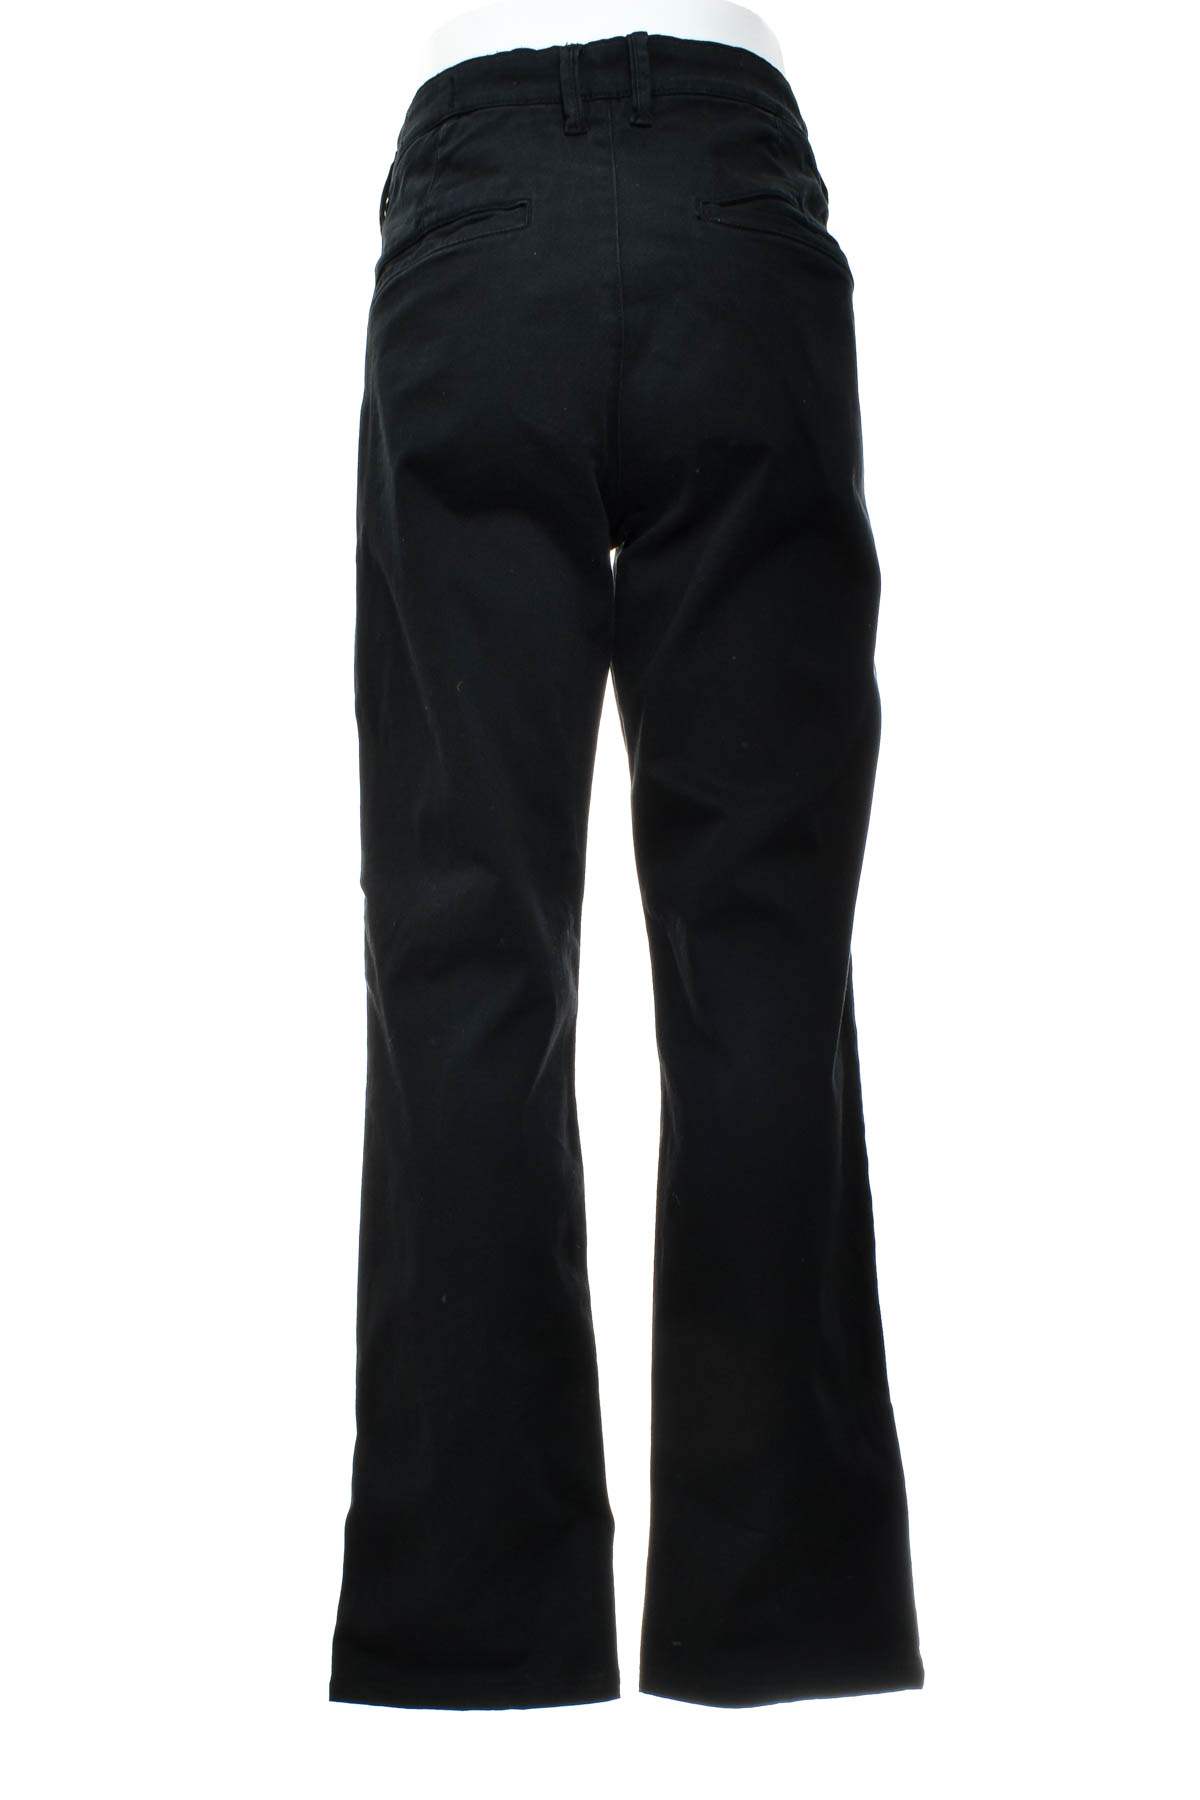 Pantalon pentru bărbați - TOM TAILOR Denim - 1